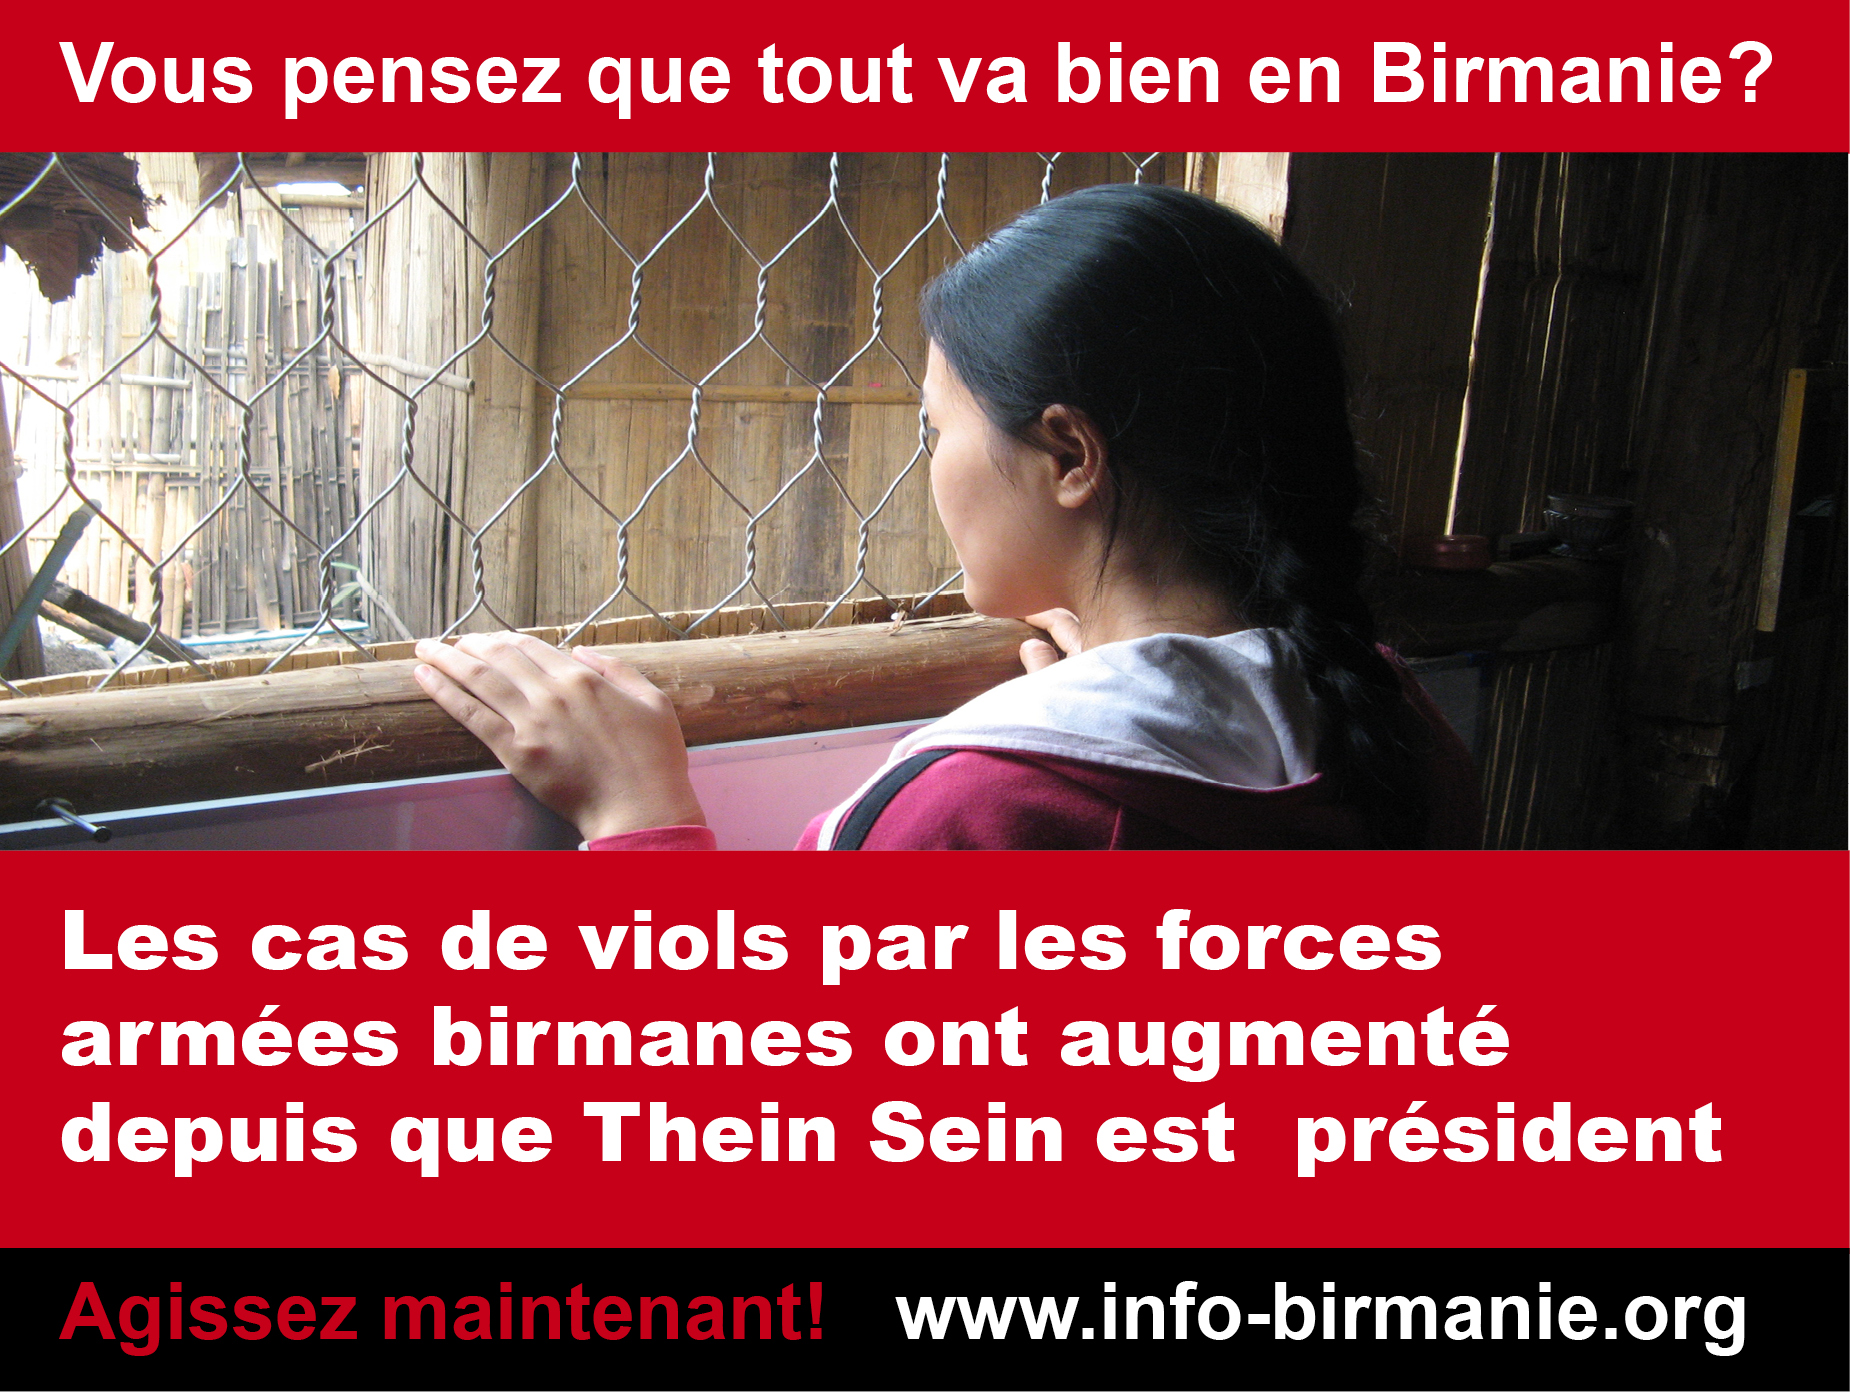 Violences sexuelles en Birmanie : une commission d’enquête internationale s’impose